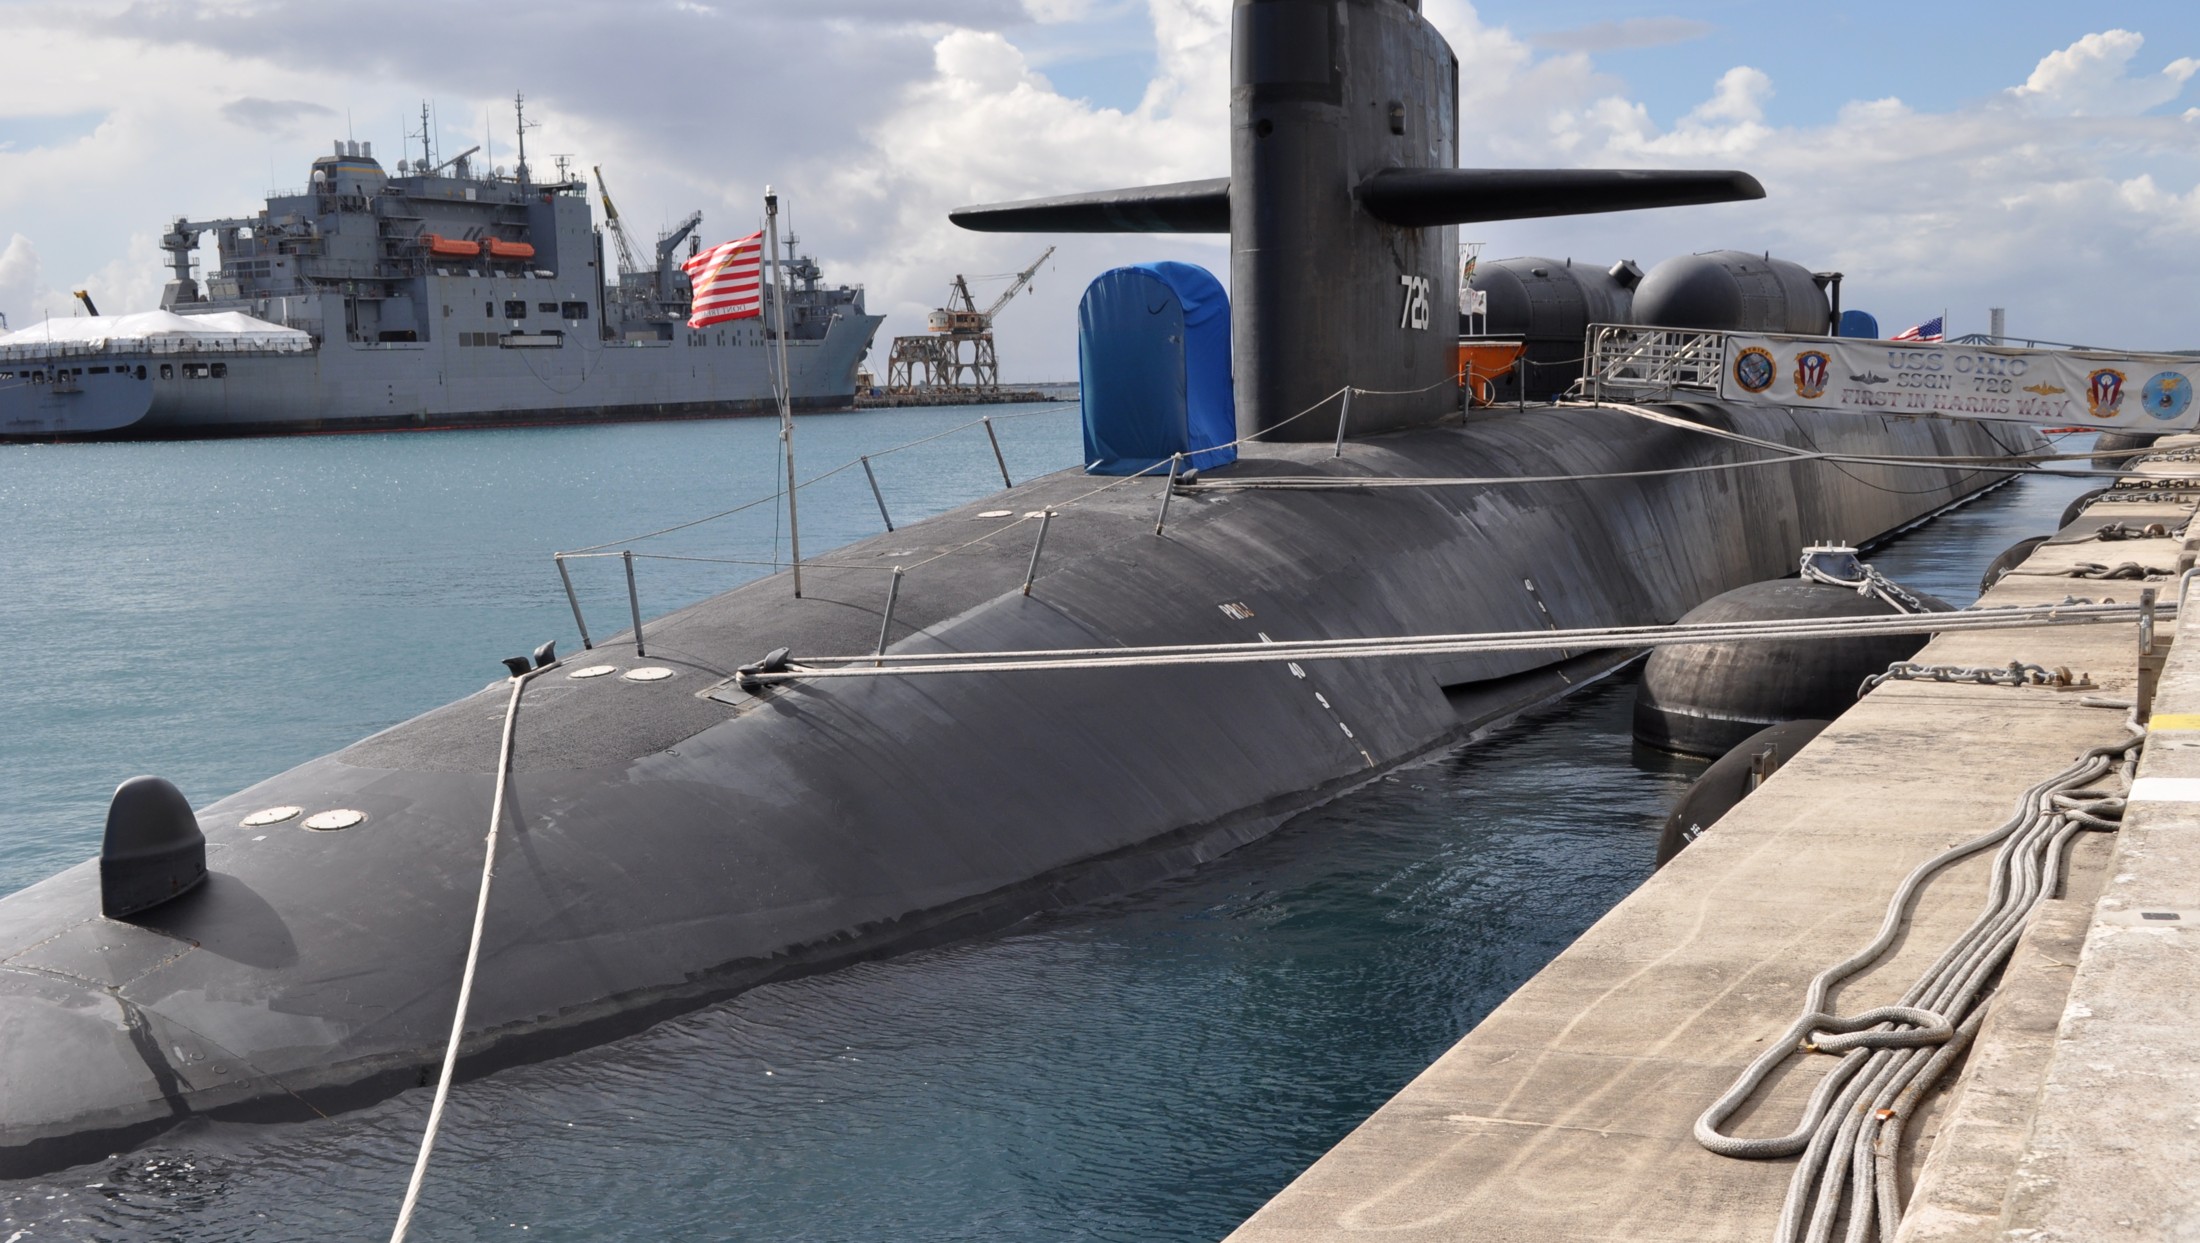 ssgn-726 uss ohio guided missile submarine us navy 2011 34 apra harbor guam